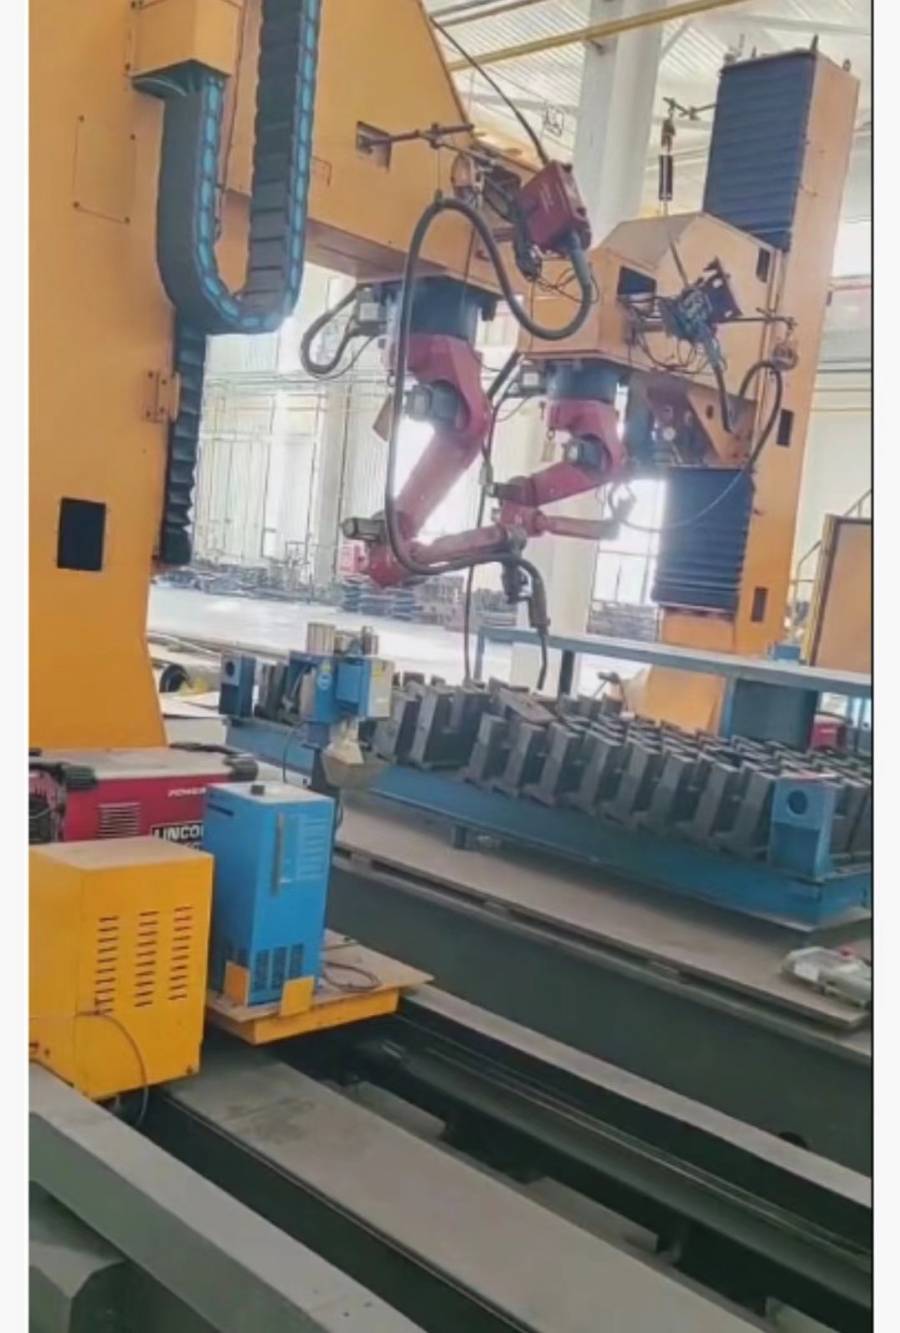 泰安市某企业机器人焊接生产线设备网络拍卖公告